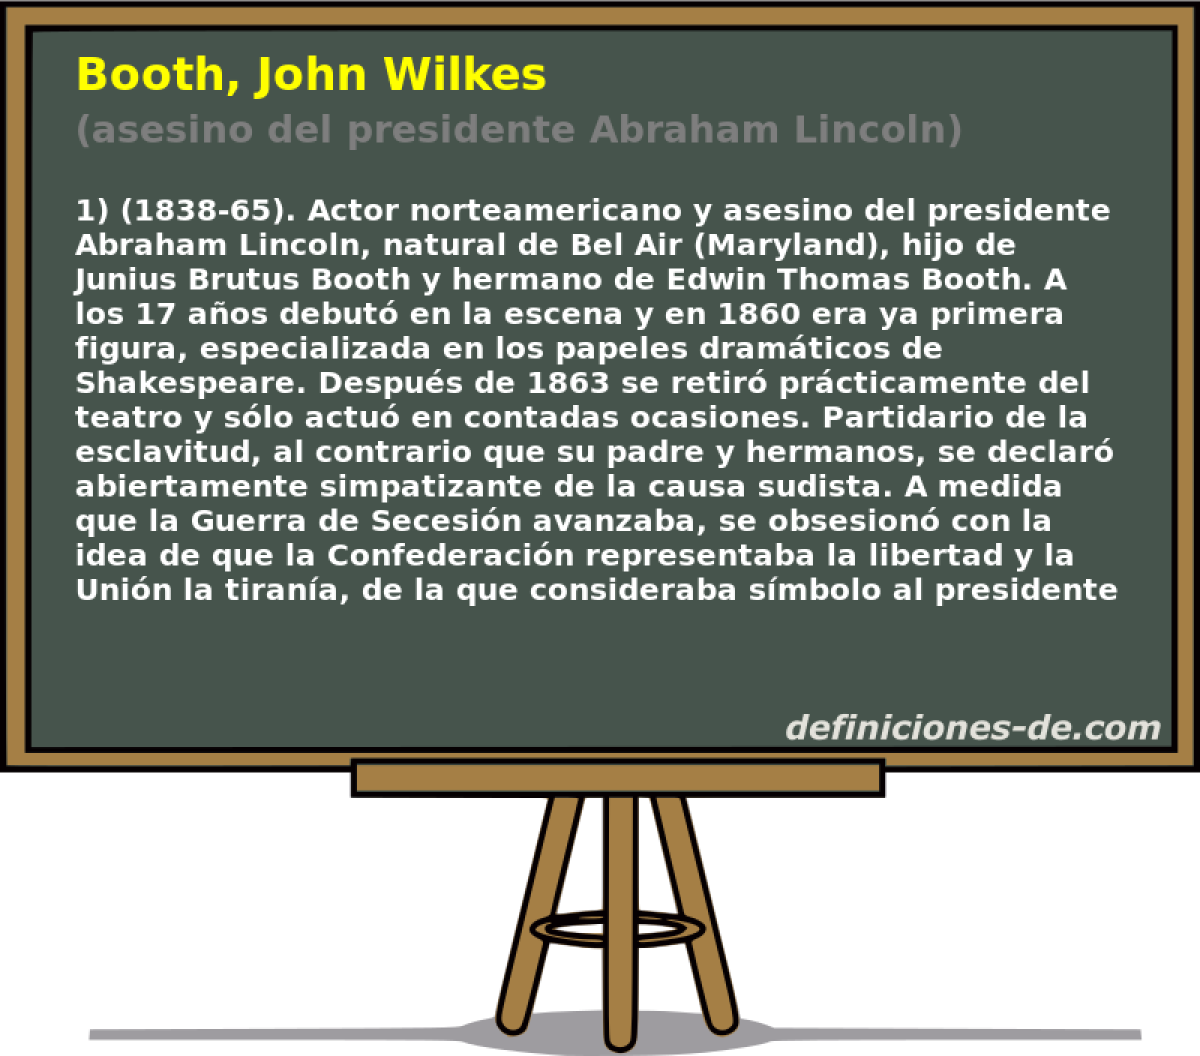 Booth, John Wilkes (asesino del presidente Abraham Lincoln)